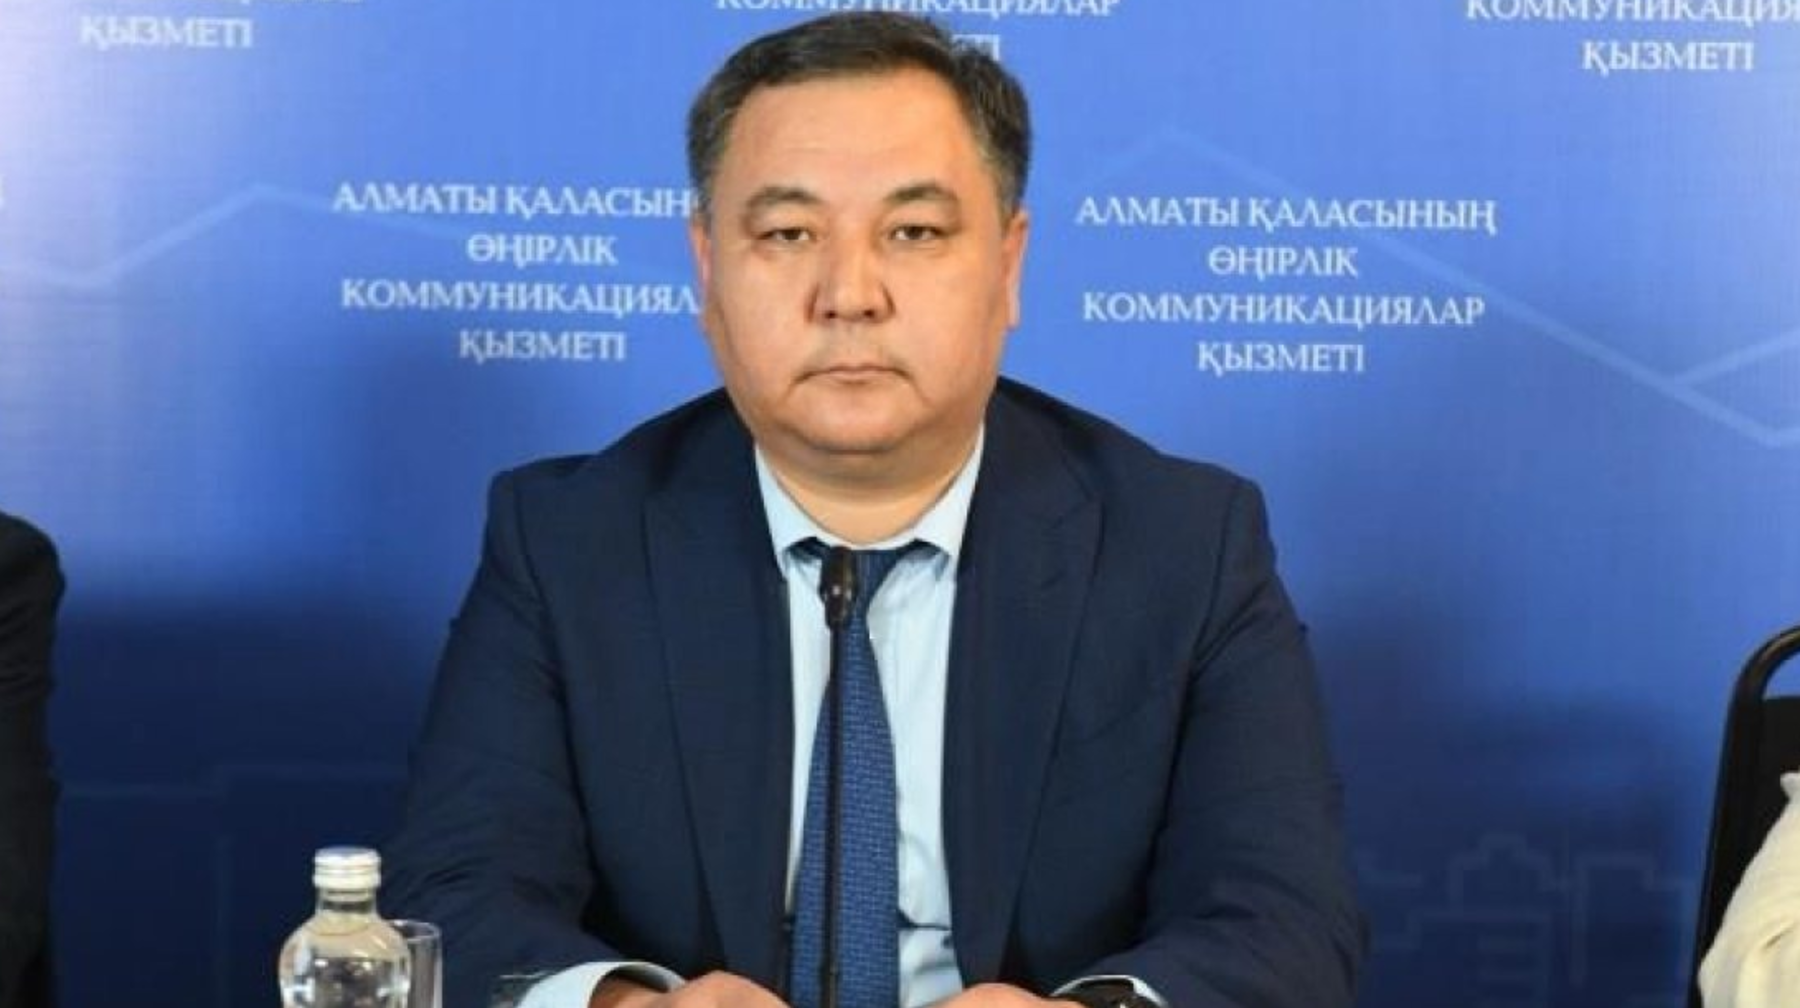 Эпидемиологическая ситуация по опасным инфекциям в Алматы стабильная